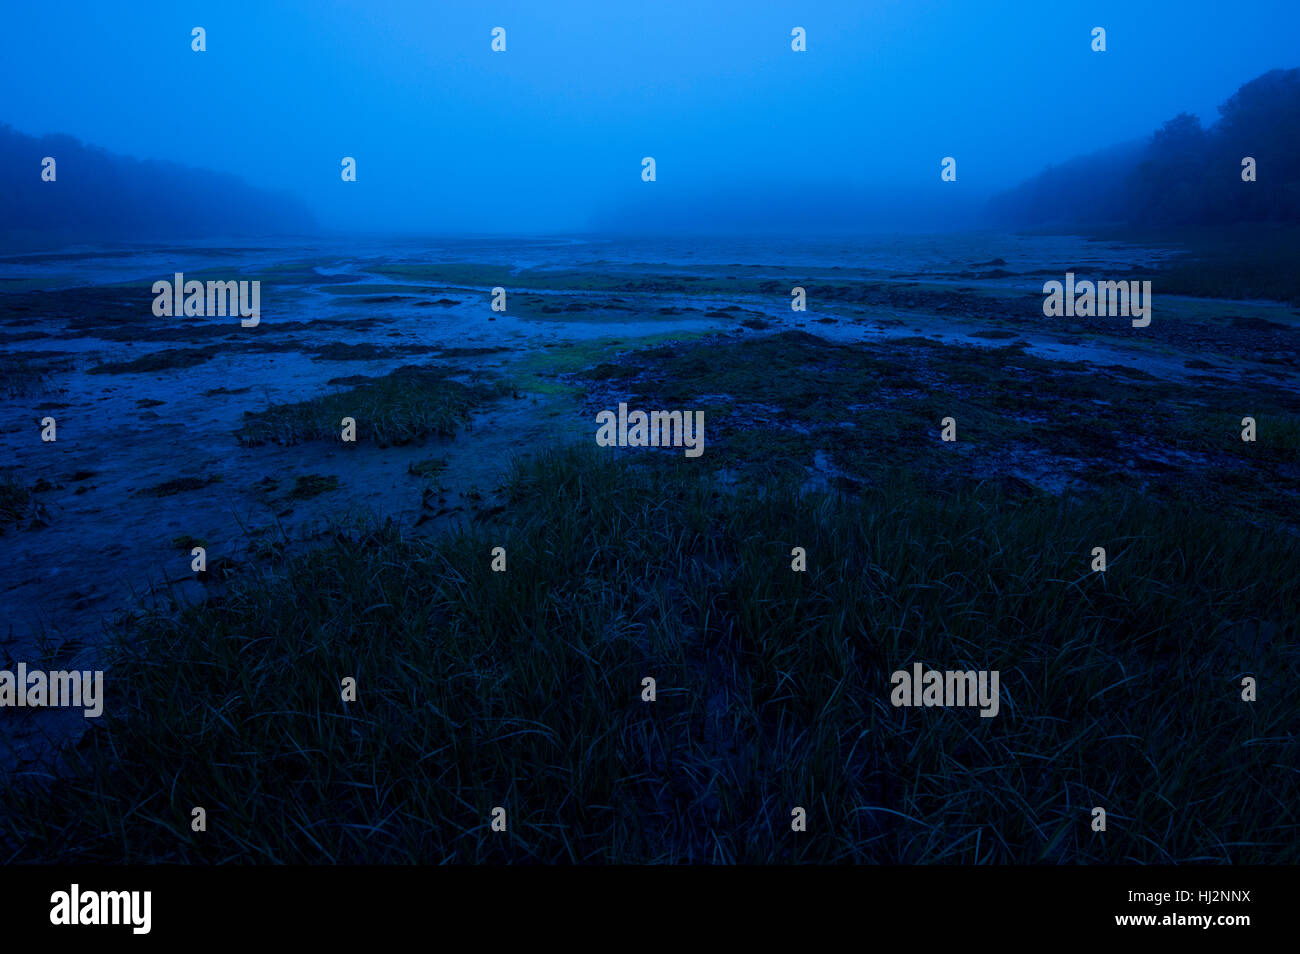 Une scène de bleu une baie vide à marée basse a photographié un crépuscule. Banque D'Images